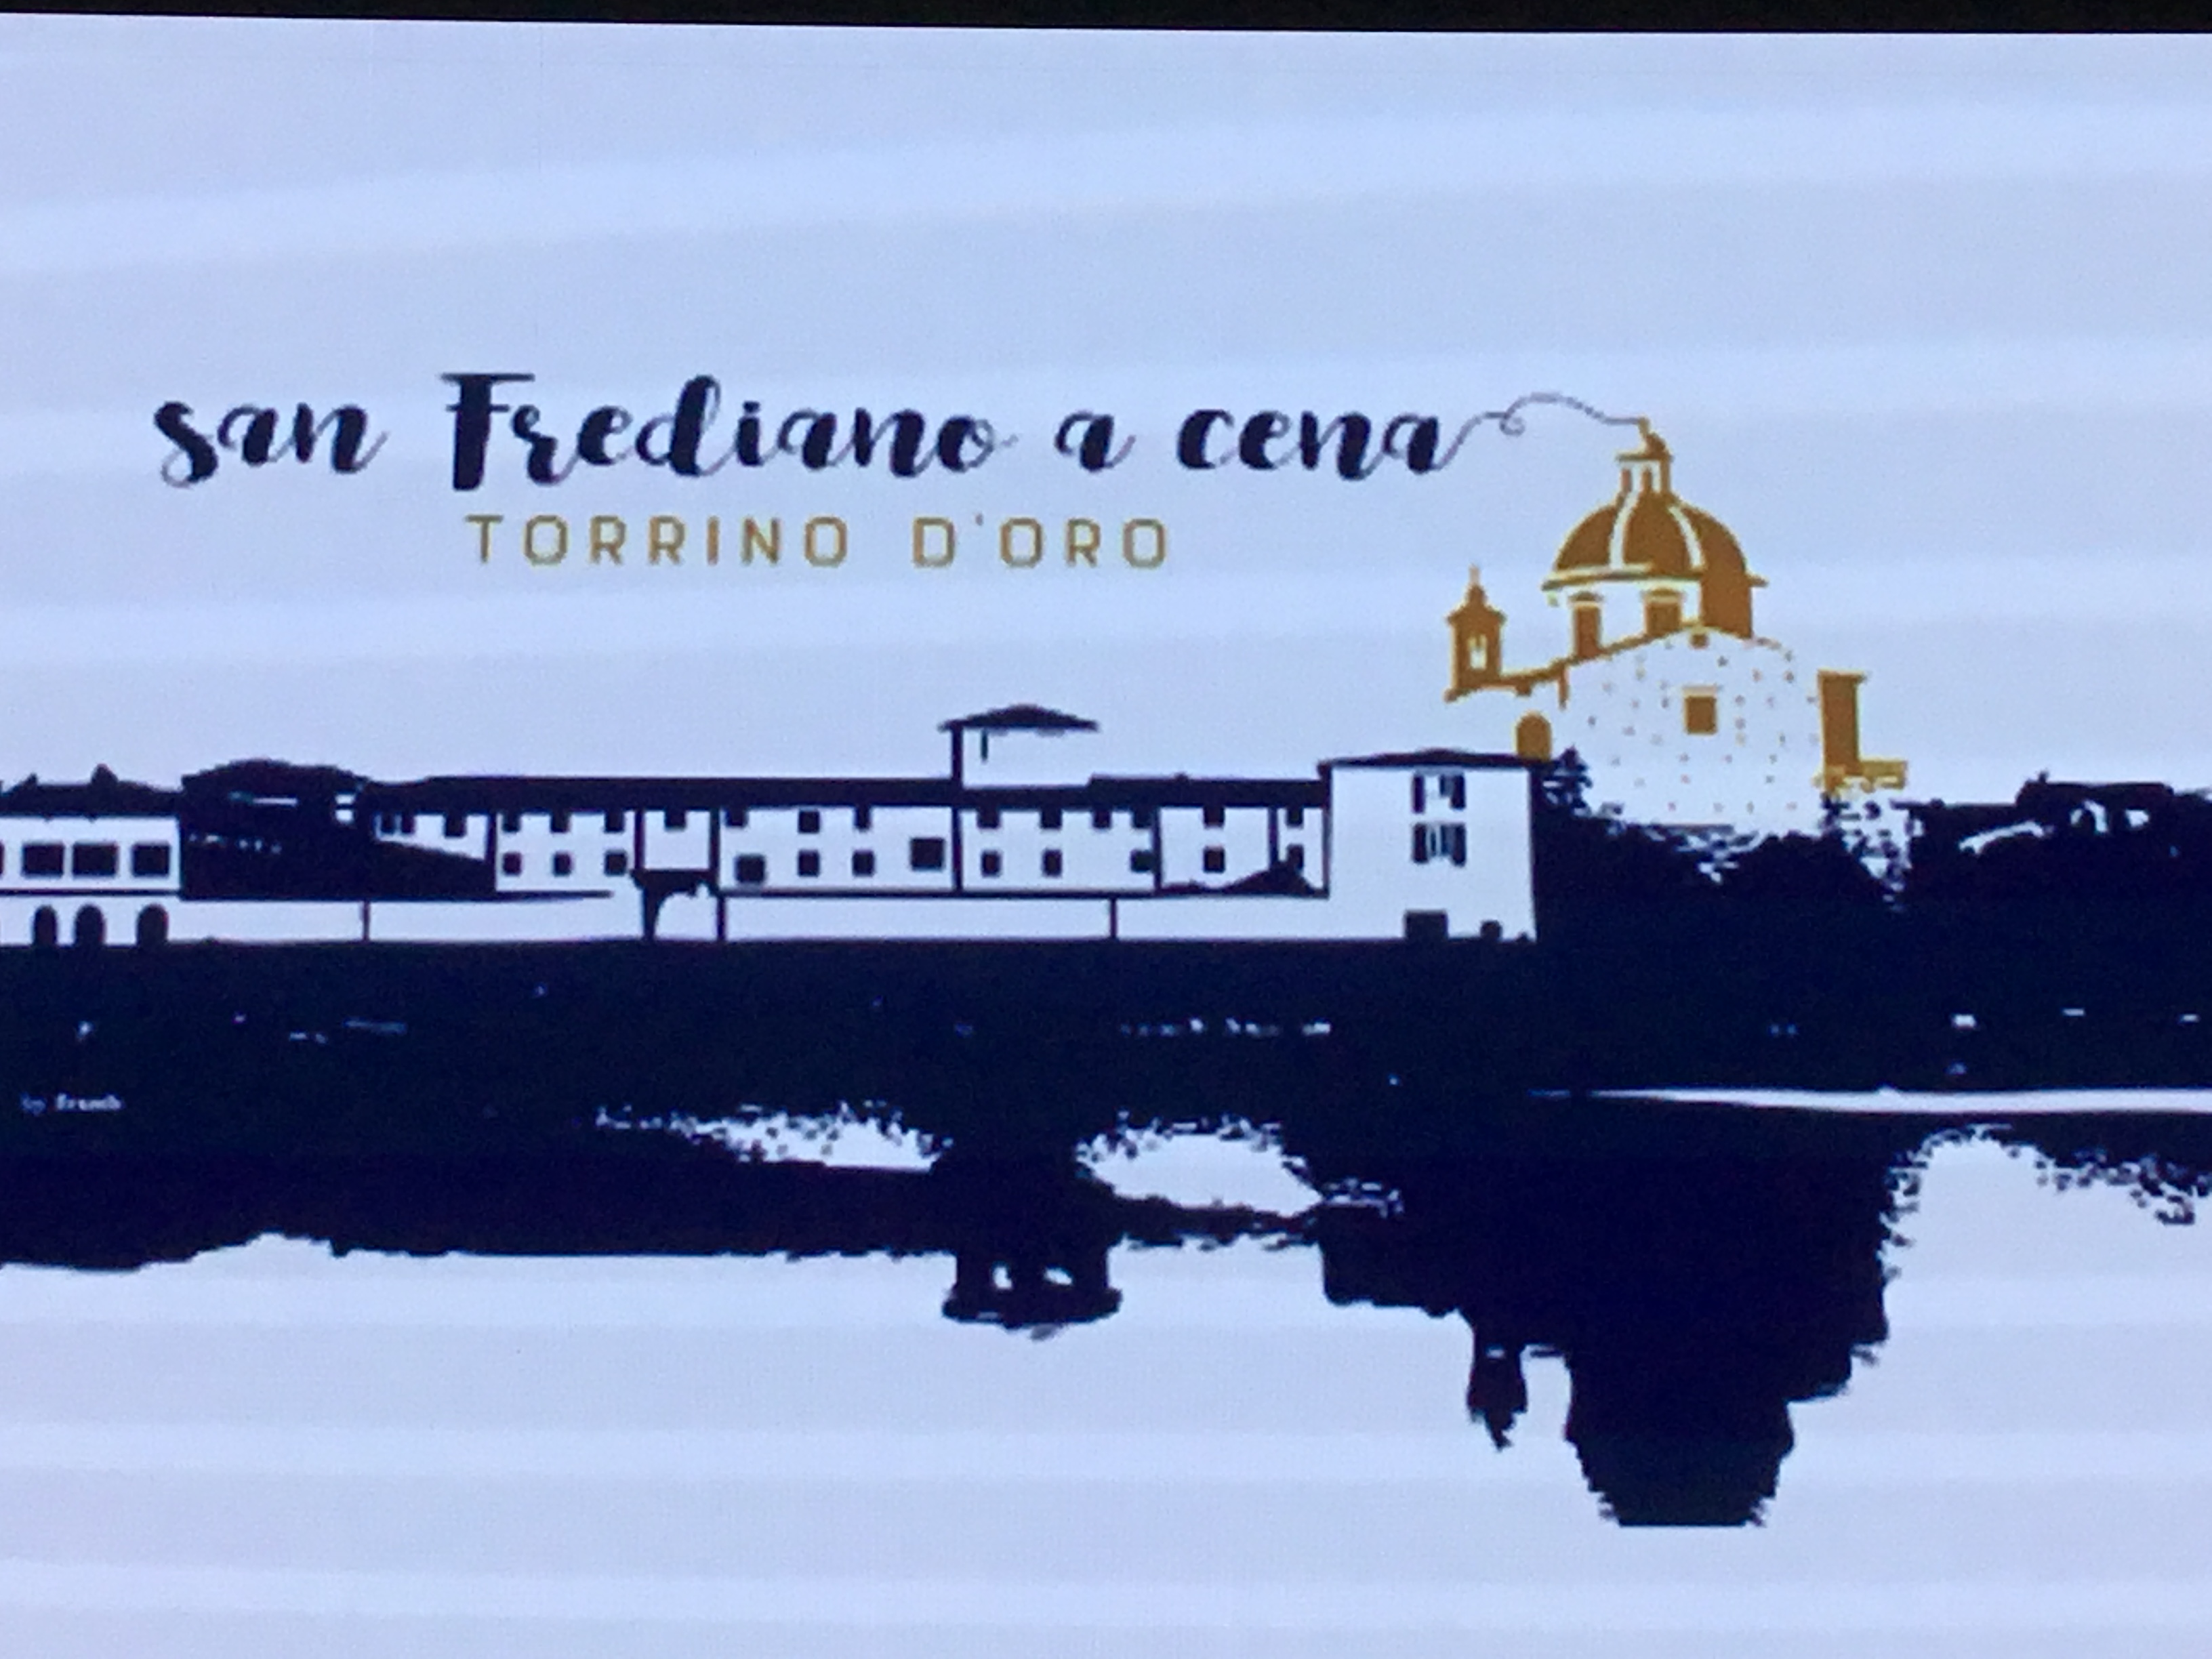 San Frediano a cena Torrino d’oro 2019 – Foto Giornalista Franco Mariani (12)